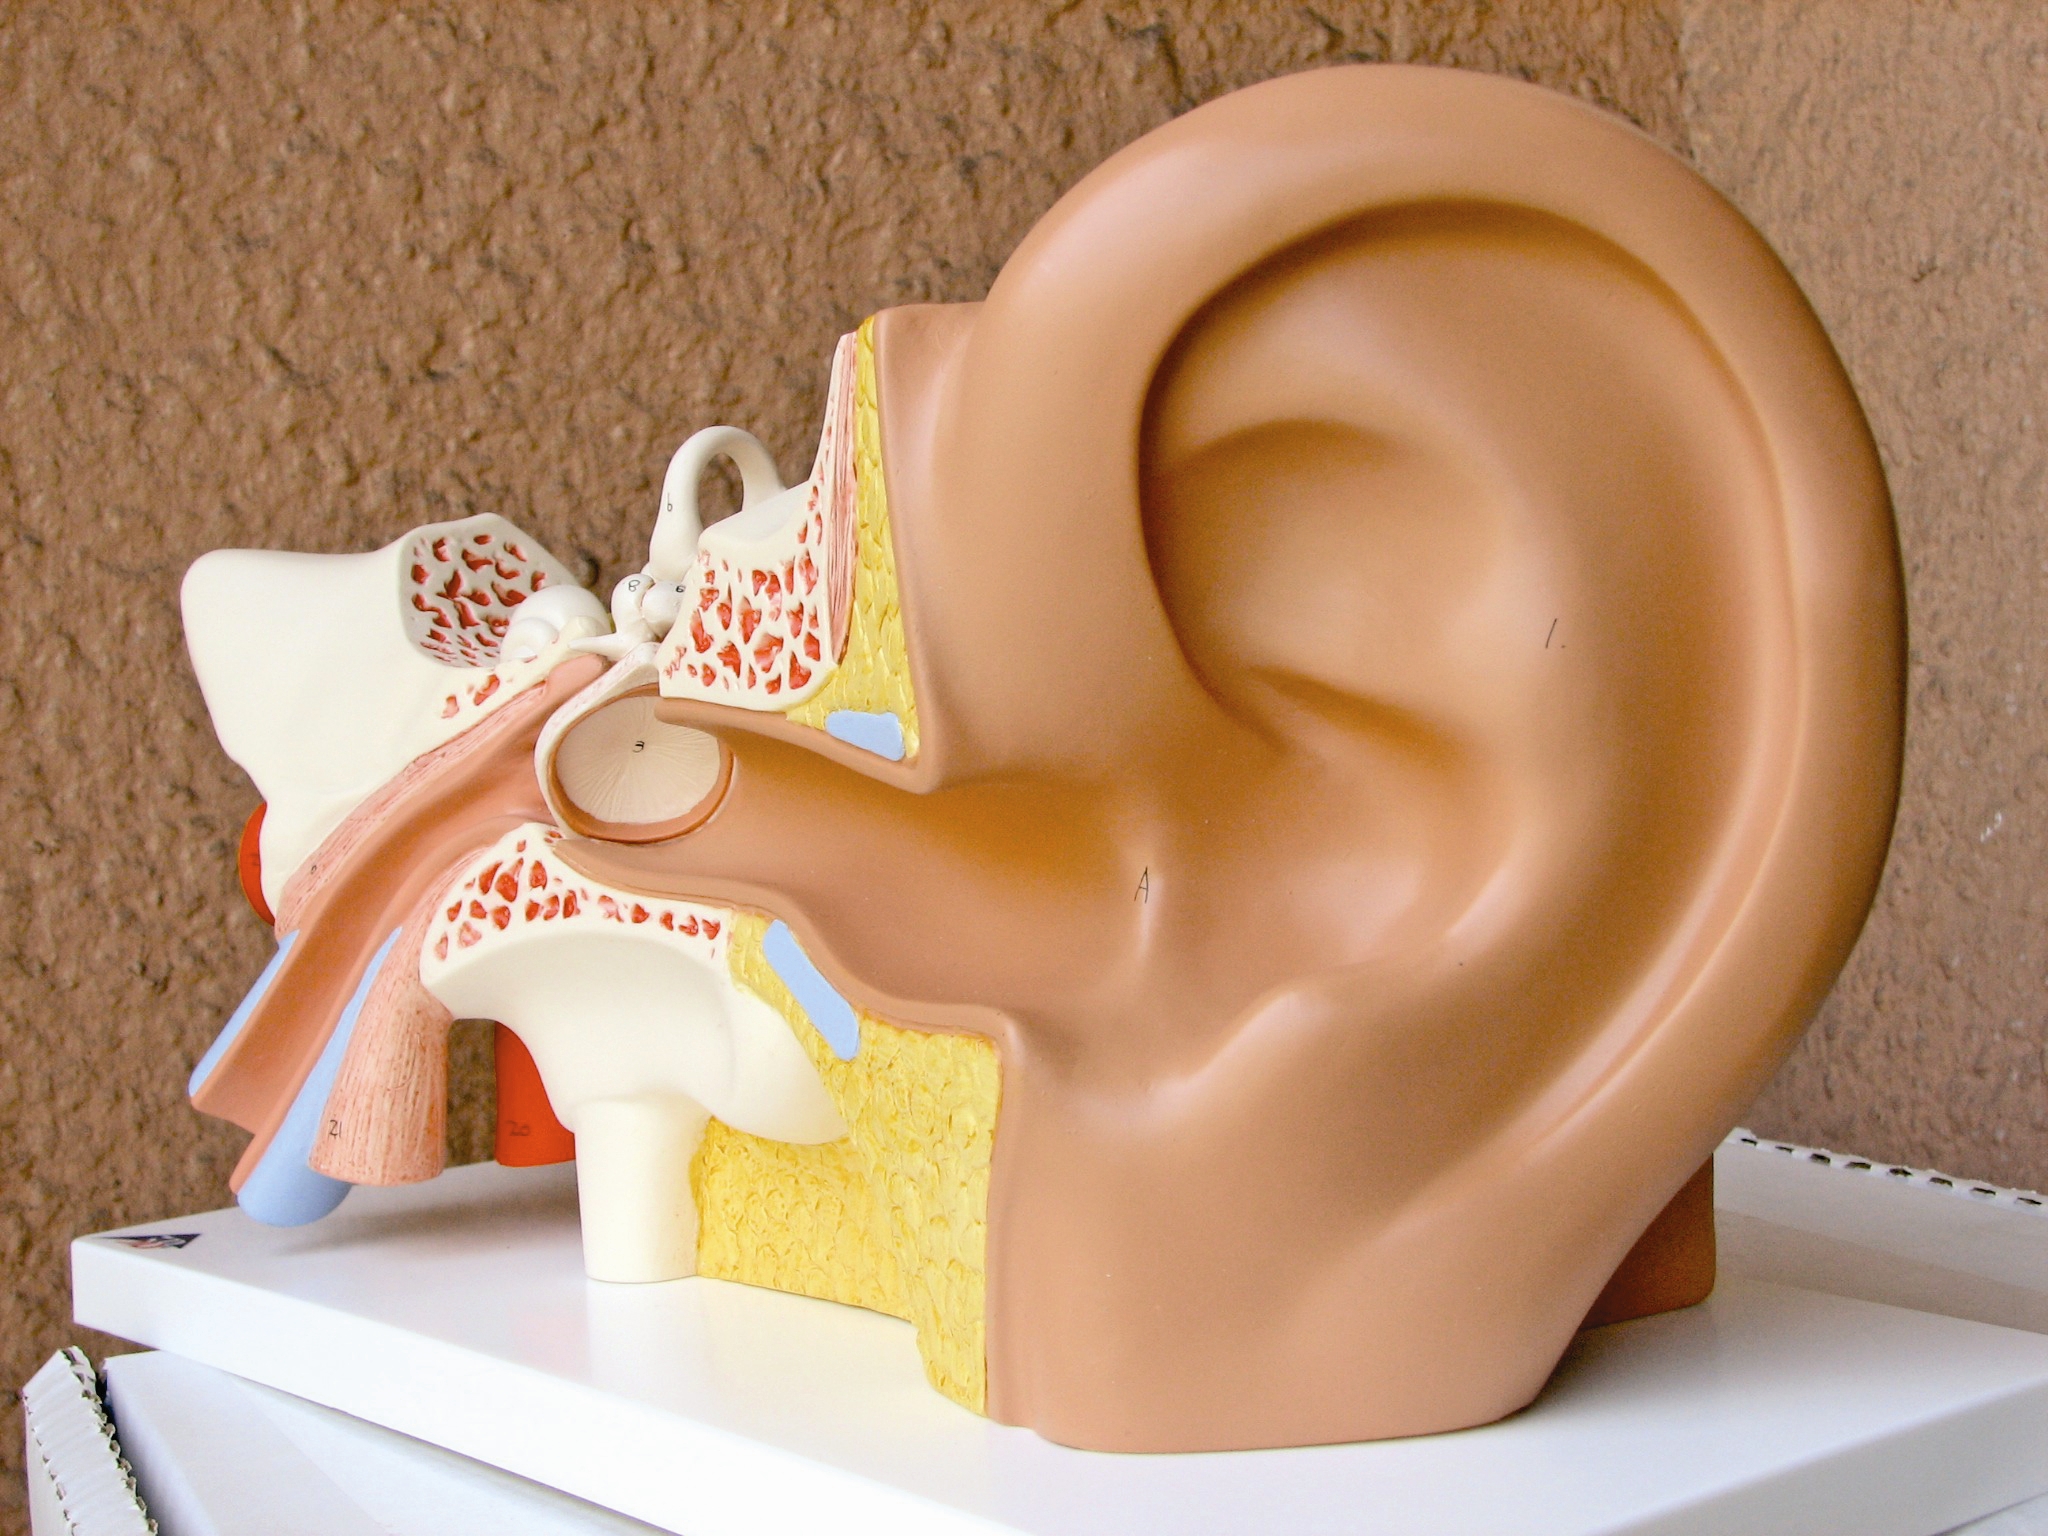 با مصرف این ماده غذایی شنوایی خود را تقویت کنید